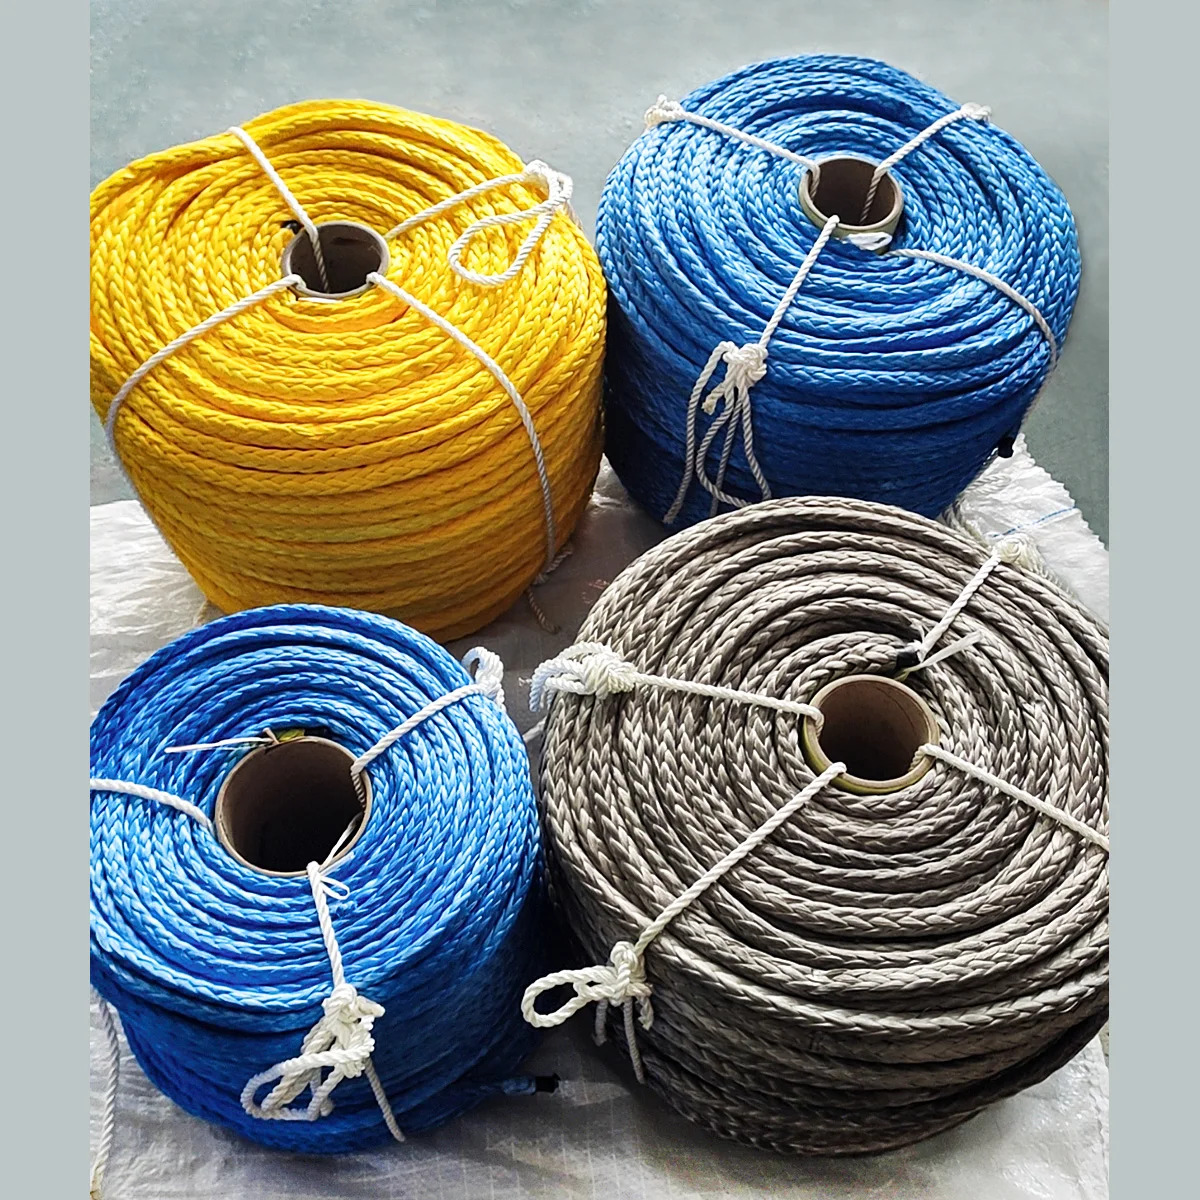 Corde d'amarrage marine en fibre UHMWPE à 12 brins pré-étirée